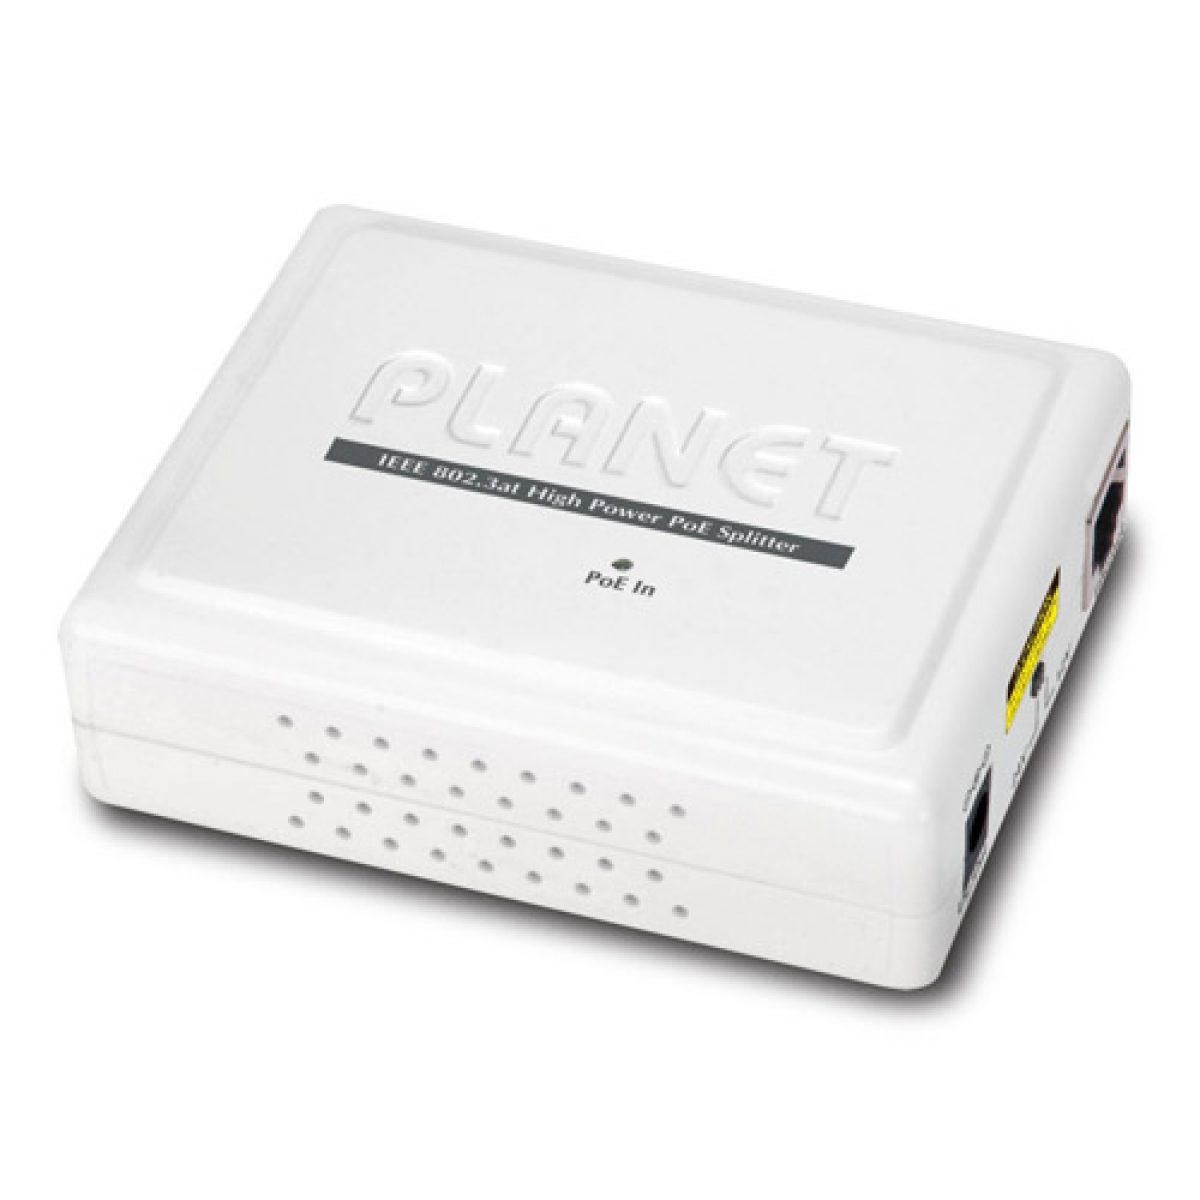 POE-162S IEEE 802.3at Gigabit Power over Ethernet Plus Splitter (12V/24V) -  Planet Technology USA